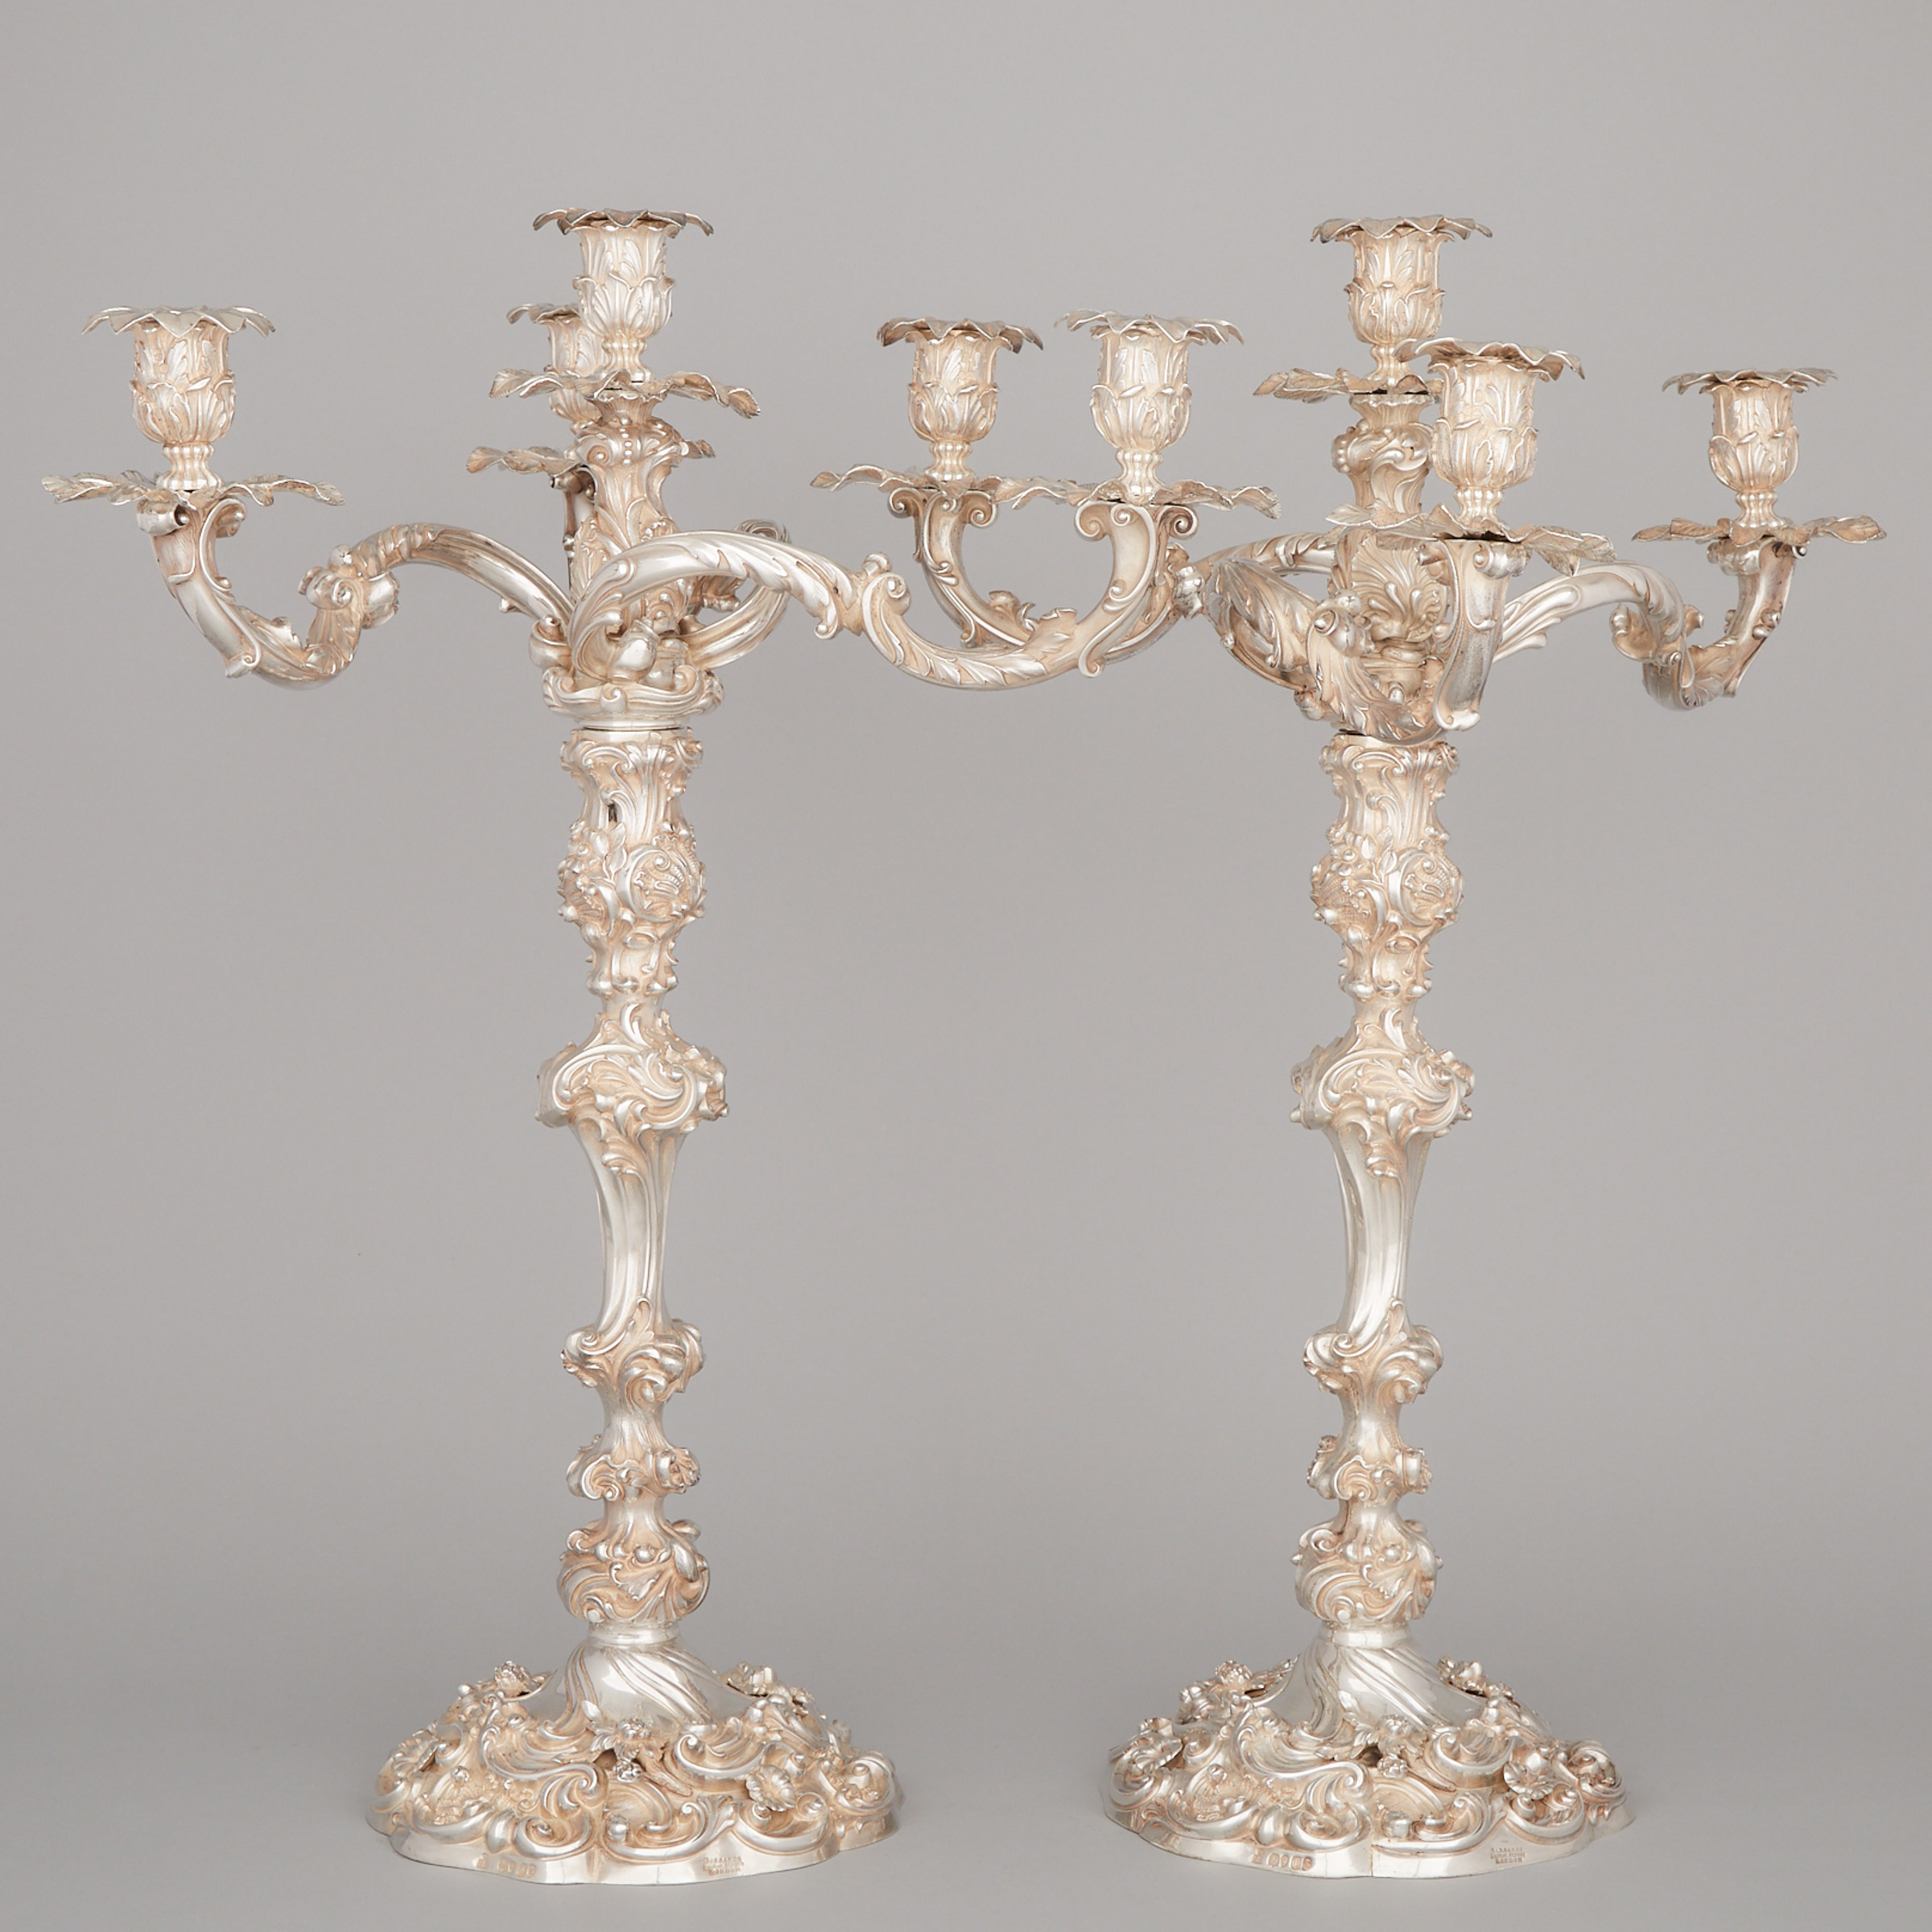 A Massive Pair of Early Victorian Cast Silver Four-Light Candelabra, Robert Garrard II, London, 1838